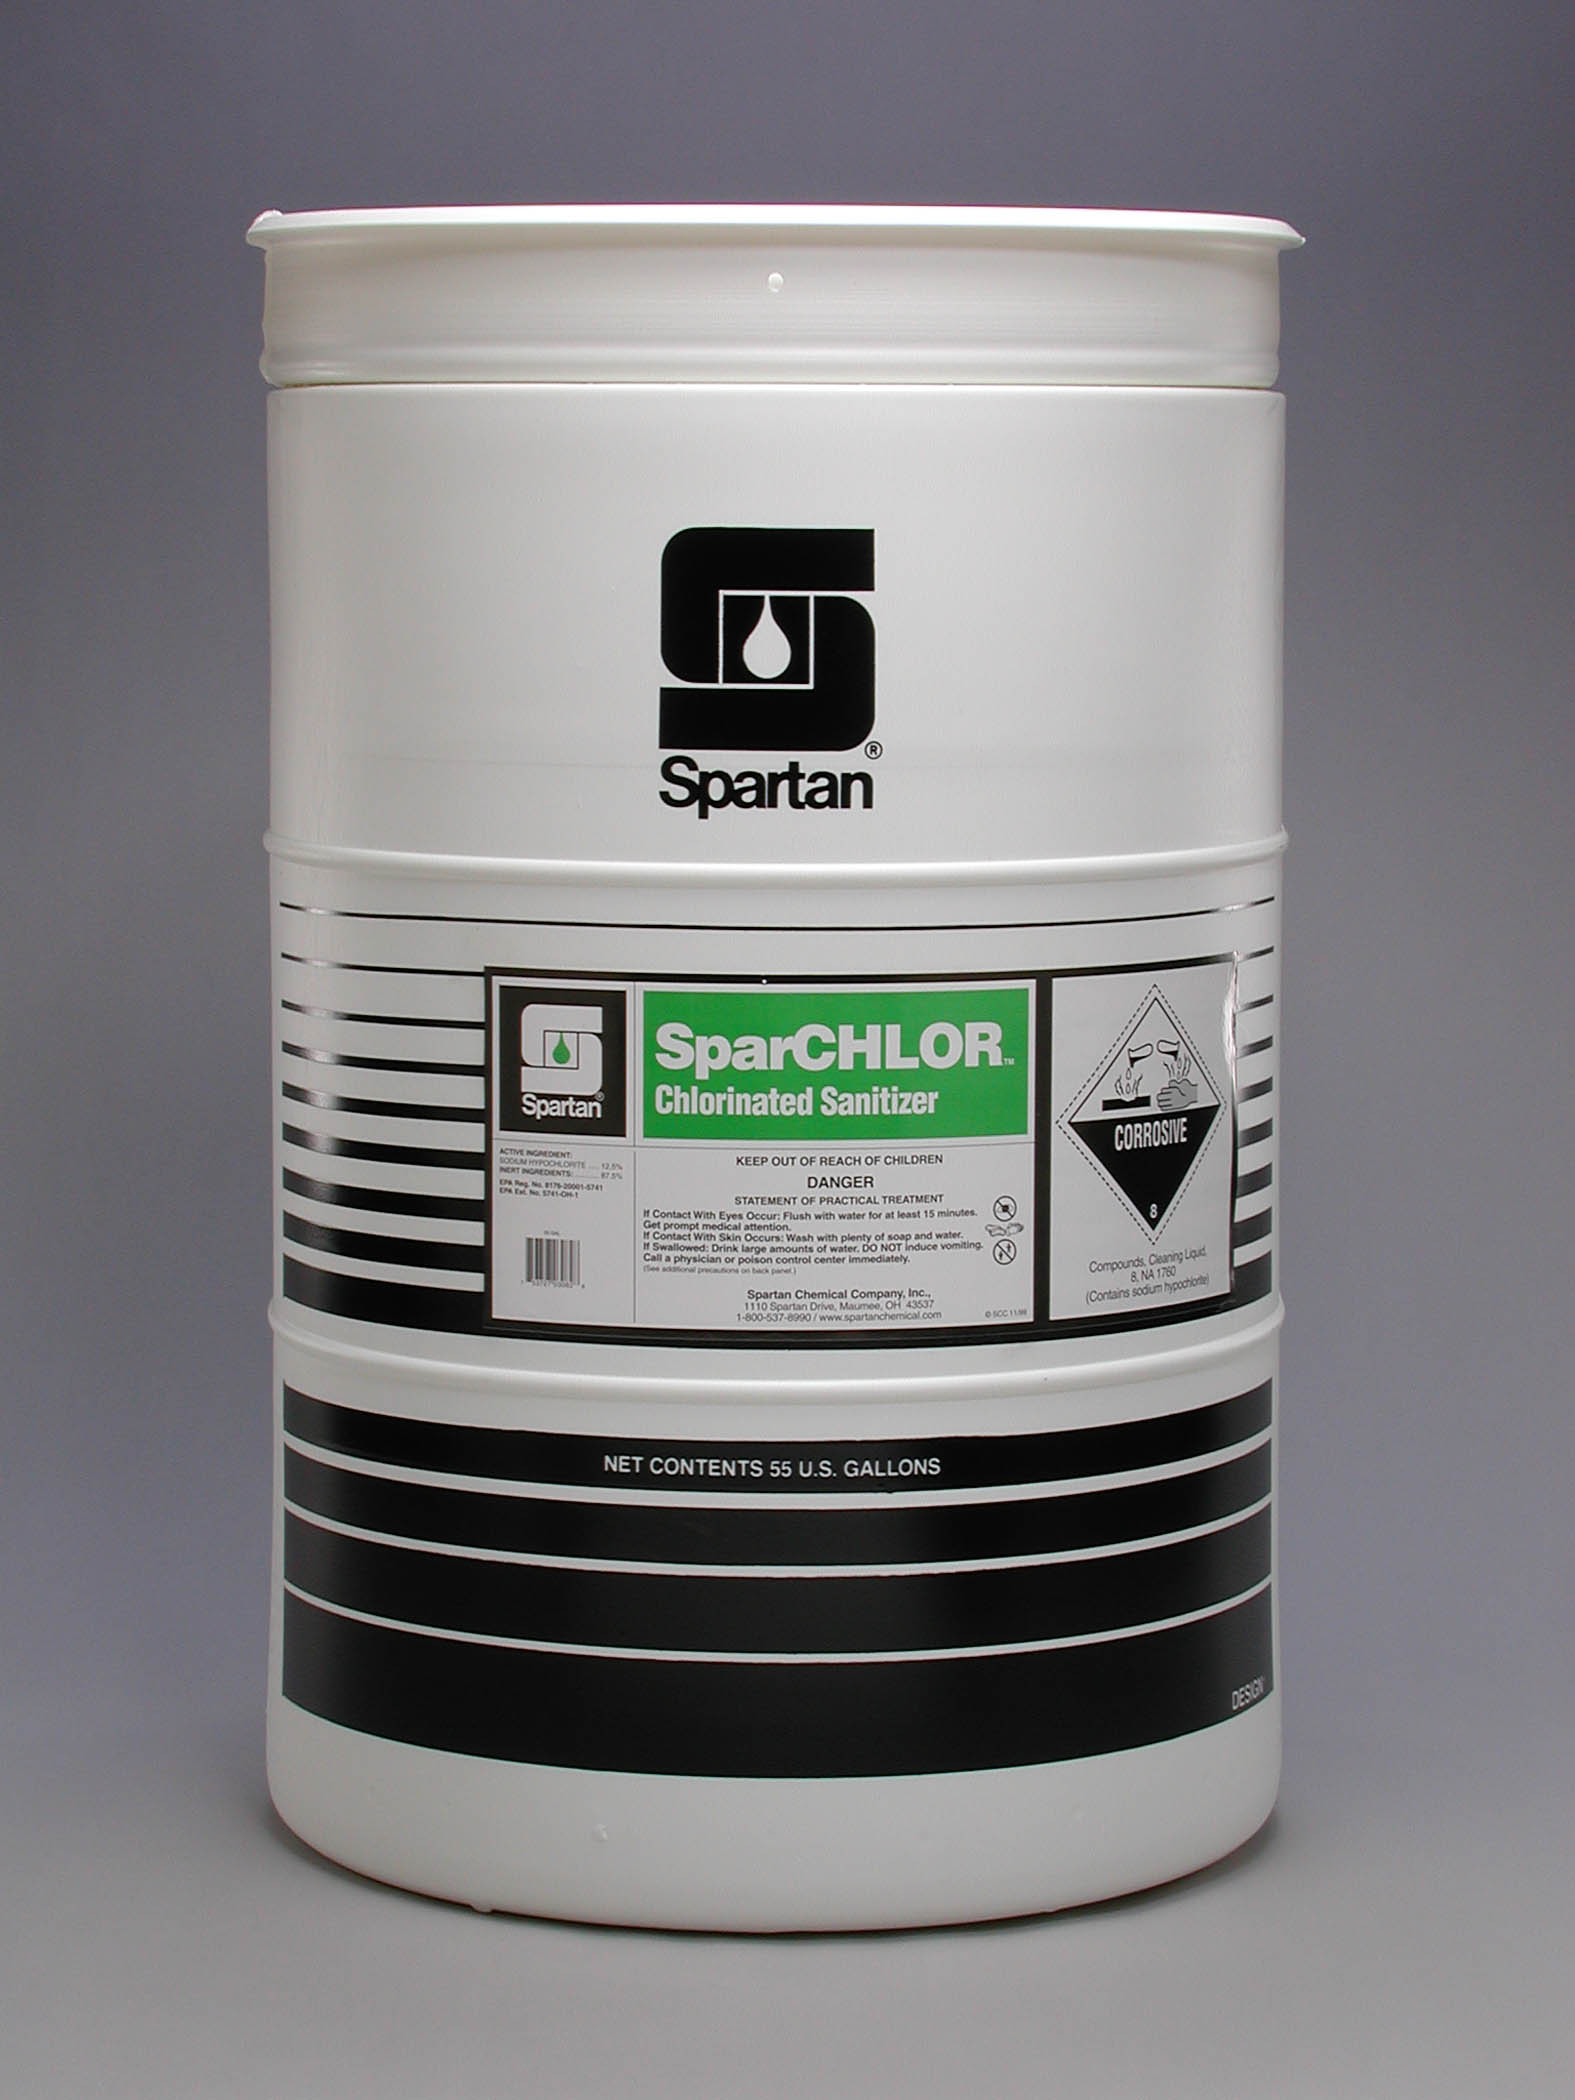 SparCHLOR liquid chlorinated sanitizer